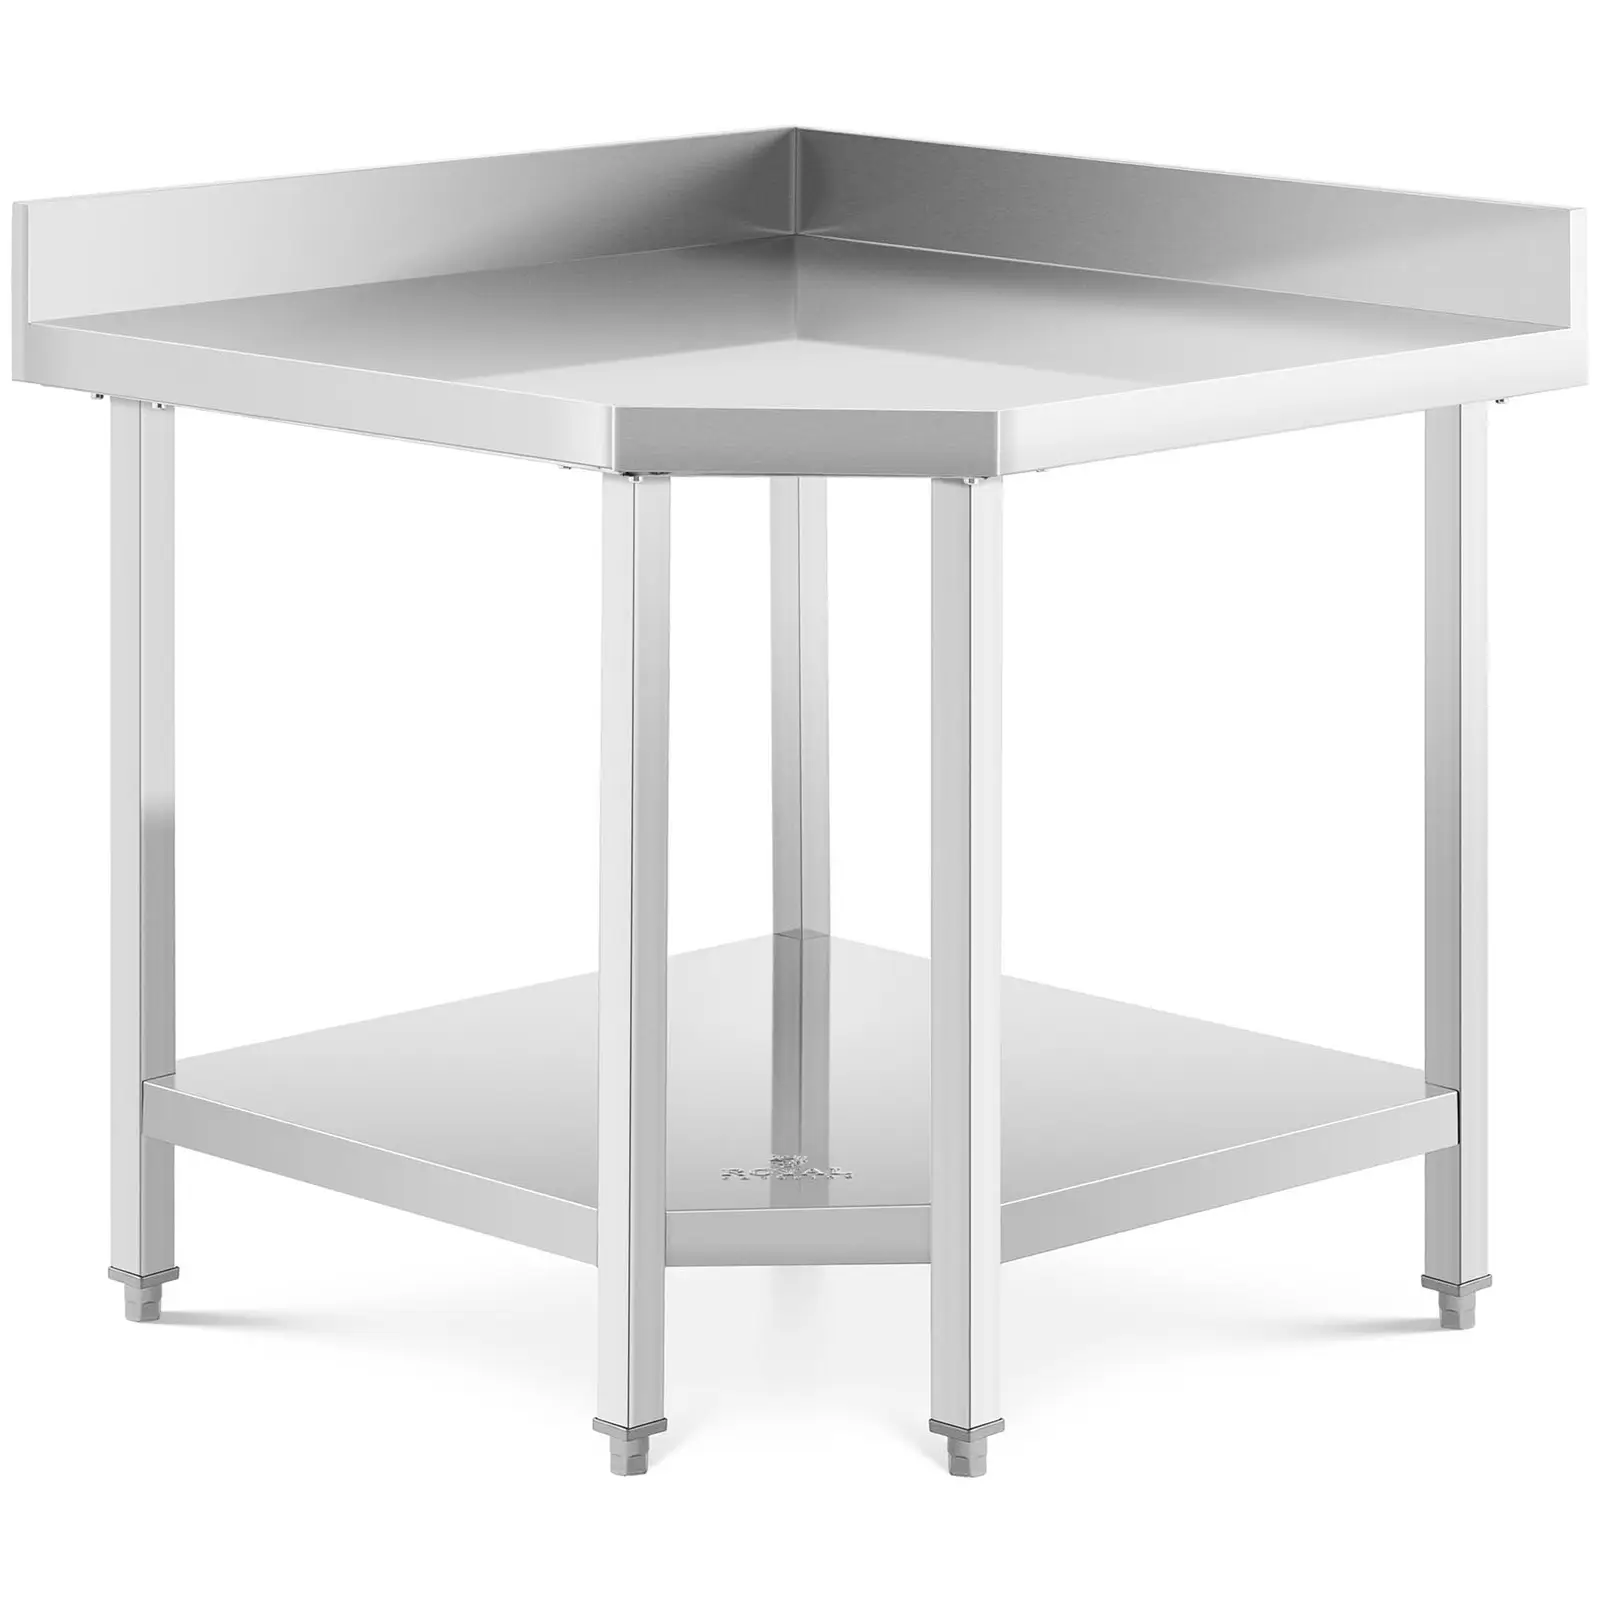 Rohový stůl z ušlechtilé oceli 90 x 70 cm 300 kg nosnost - Pracovní stoly Royal Catering